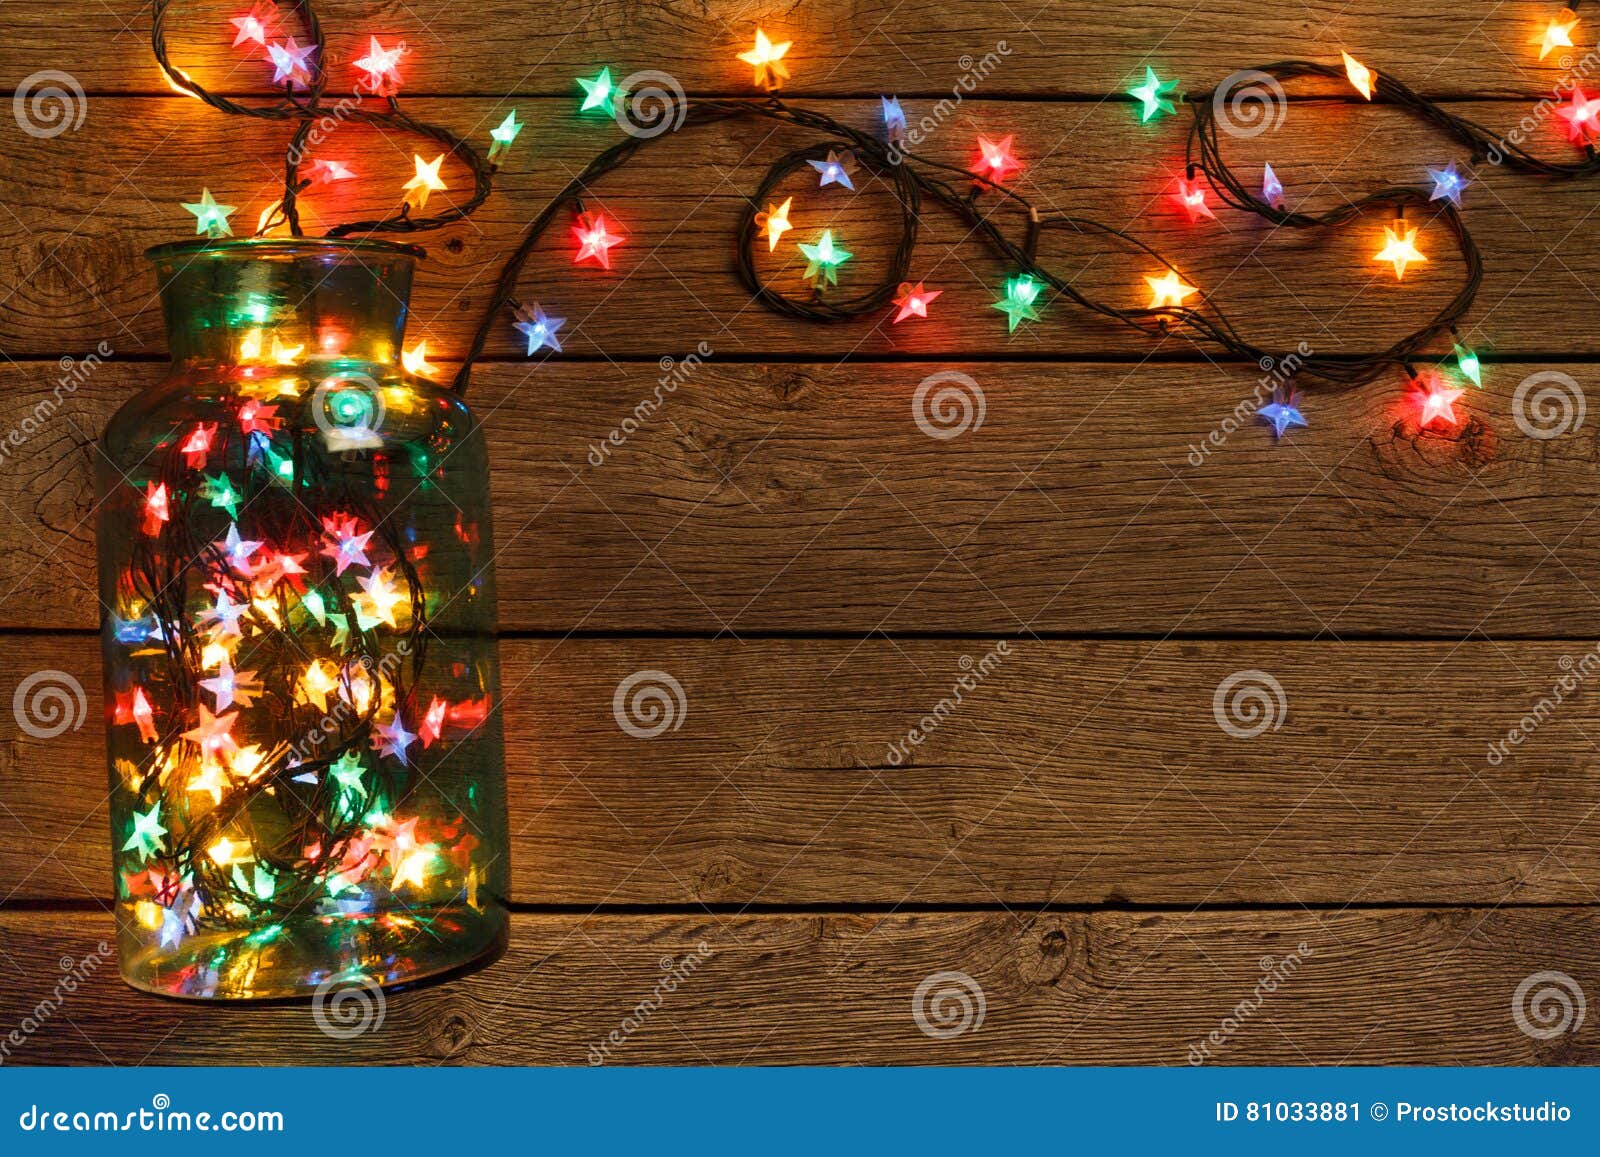 Ánh sáng Giáng sinh gắn liền với không khí lễ hội ấm áp tình thiết mỗi năm. Bạn có thể tưởng tượng được không gian một căn phòng ấm cúng với ánh đèn Noel lung linh và đầy rực rỡ? Hãy chiêm ngưỡng ngay hình nền gỗ với ánh sáng Giáng sinh tuyệt đẹp để thêm phần lung linh cho màn hình máy tính của bạn!